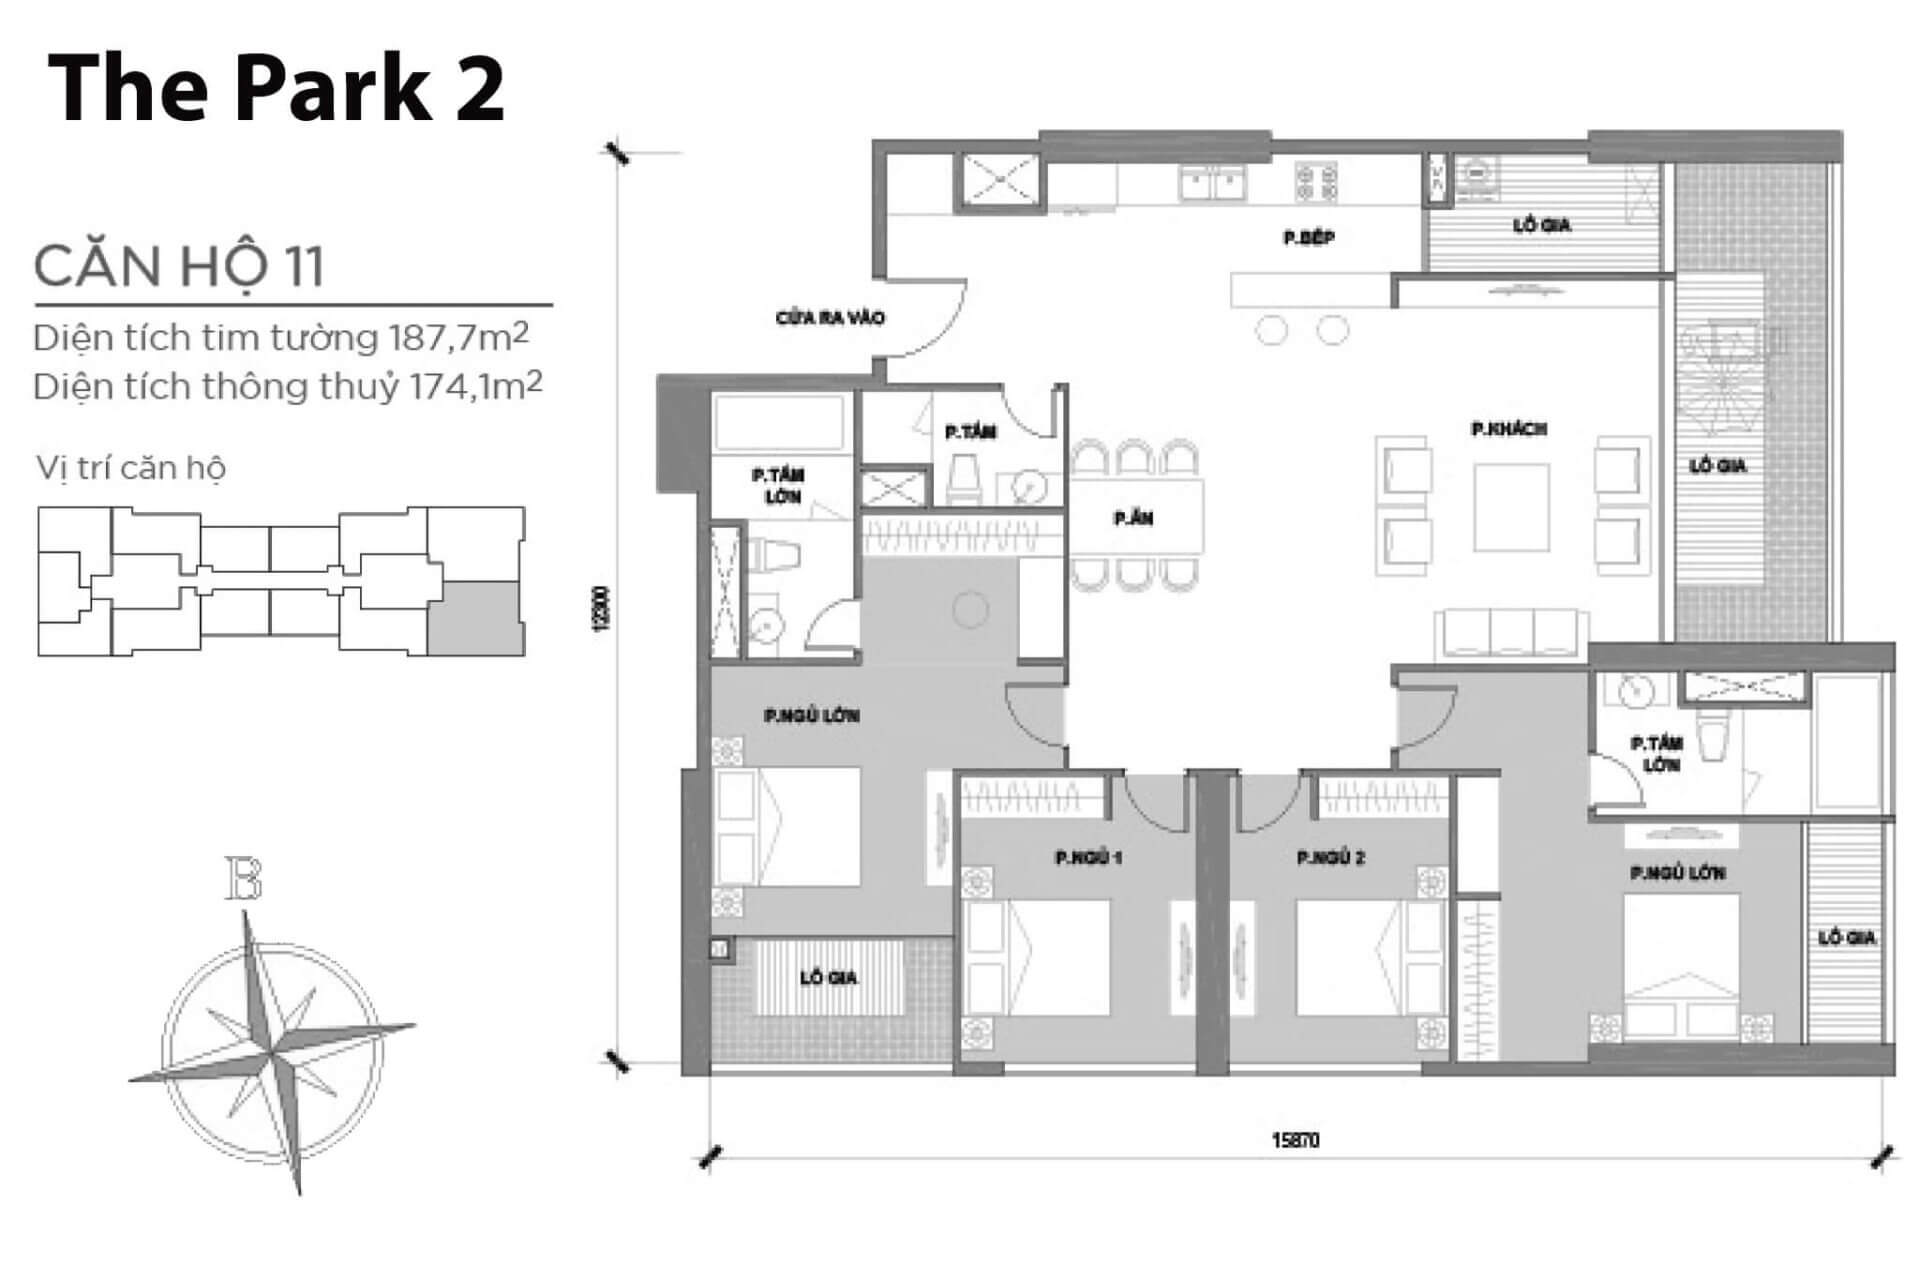 mặt bằng layout căn hộ số 11 Park 2 Vinhomes Central Park